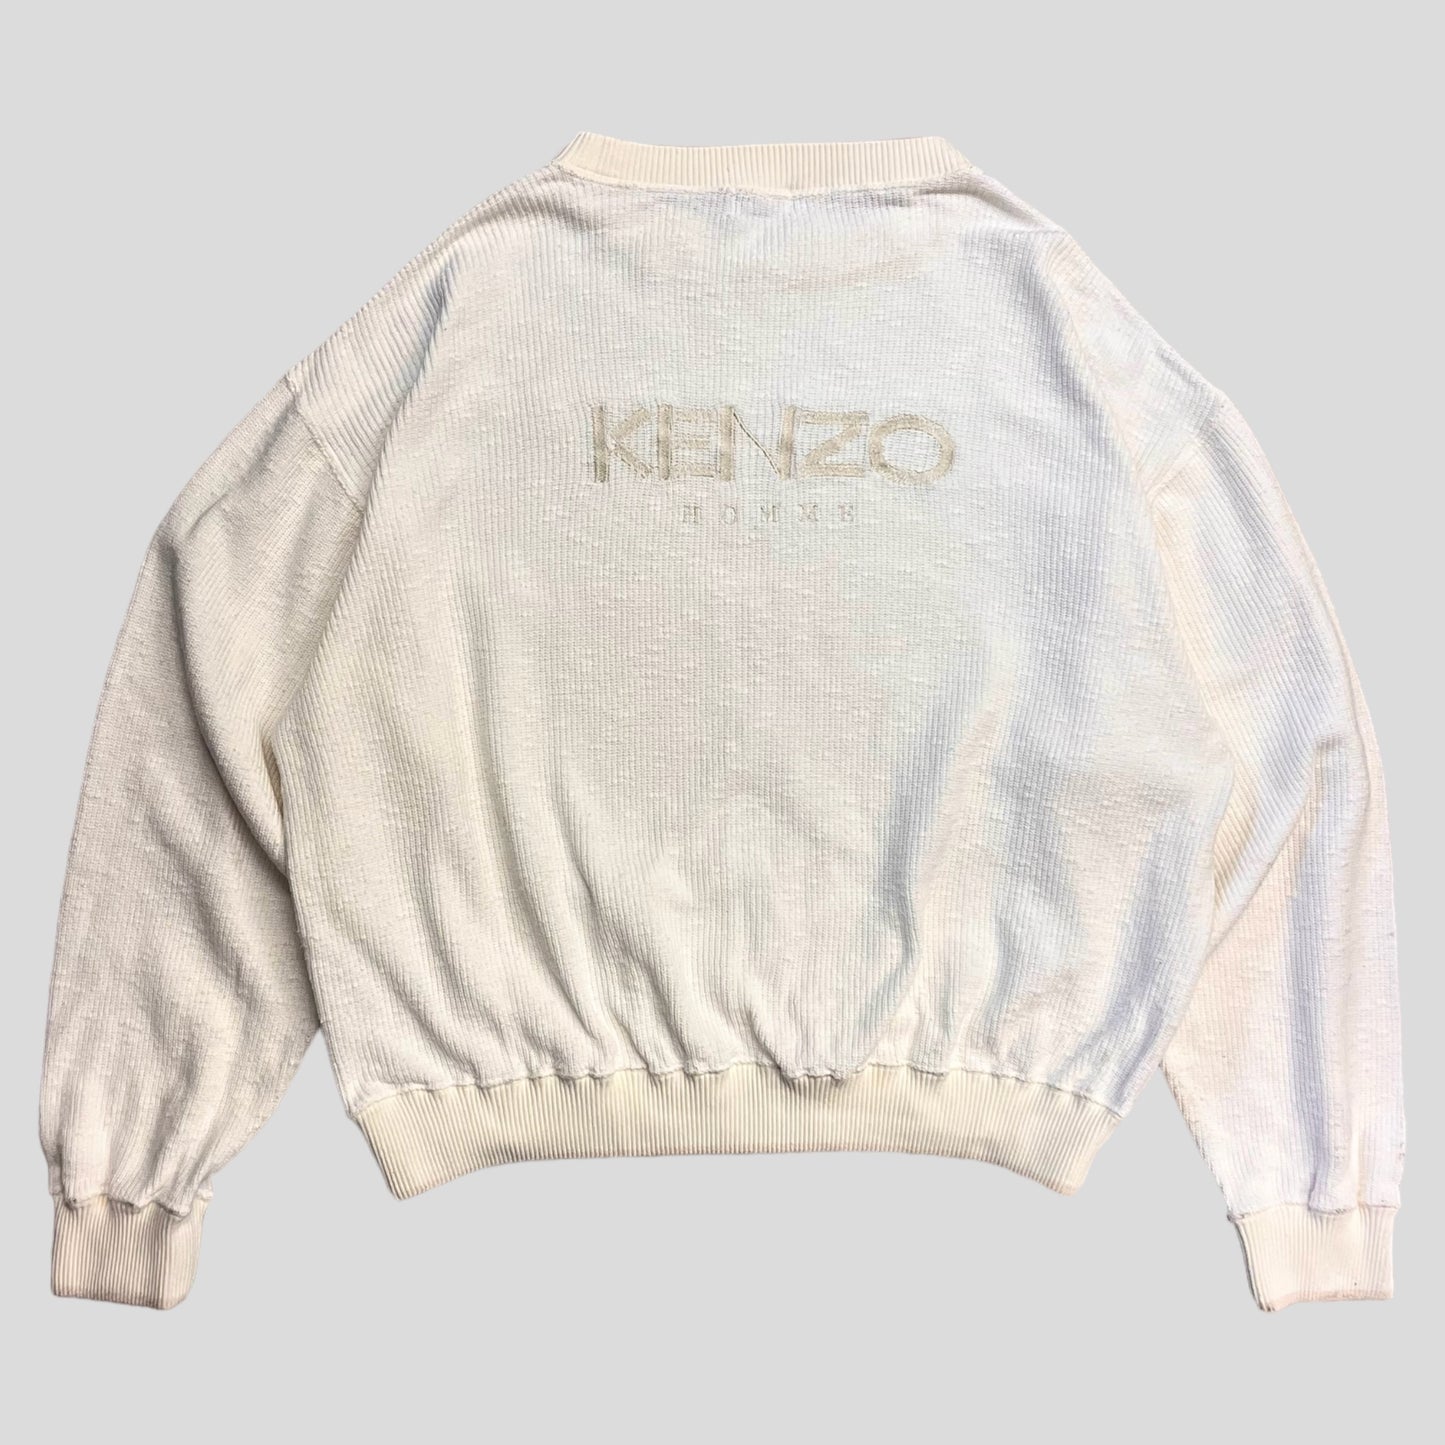 KENZO HOMME cotton sweater White